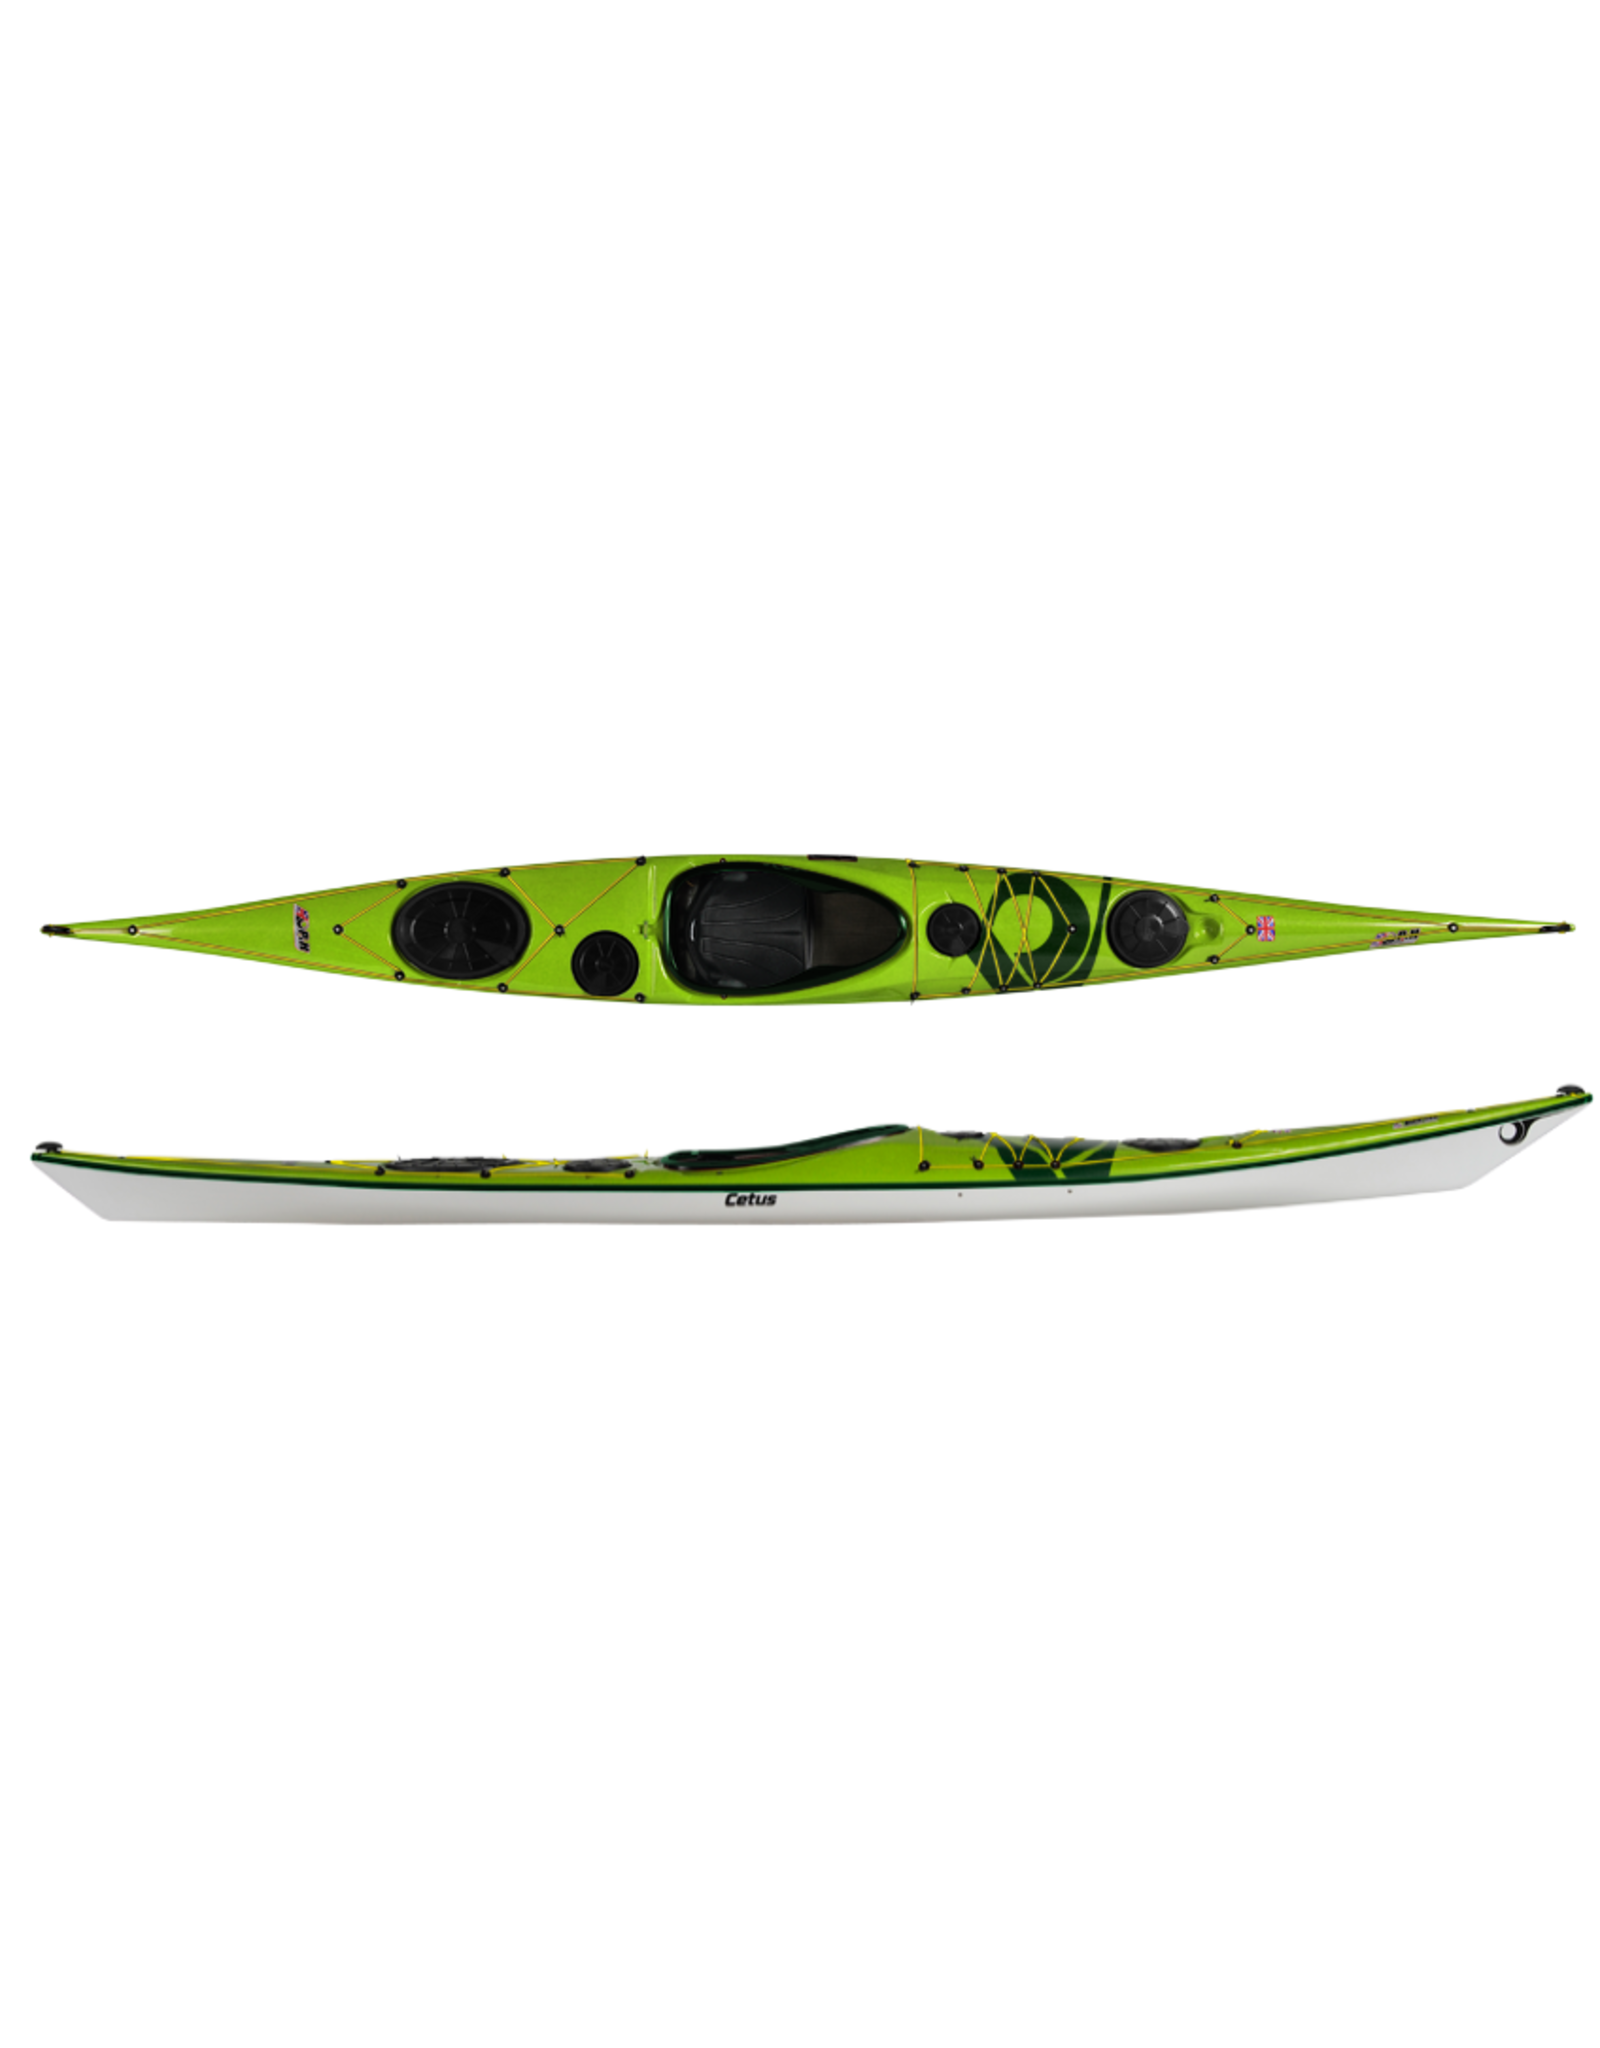 P&H Custom Sea Kayaks P&H kayak Cetus HV Lightweight Kevlar/Carbon Lime/White/Racing Green